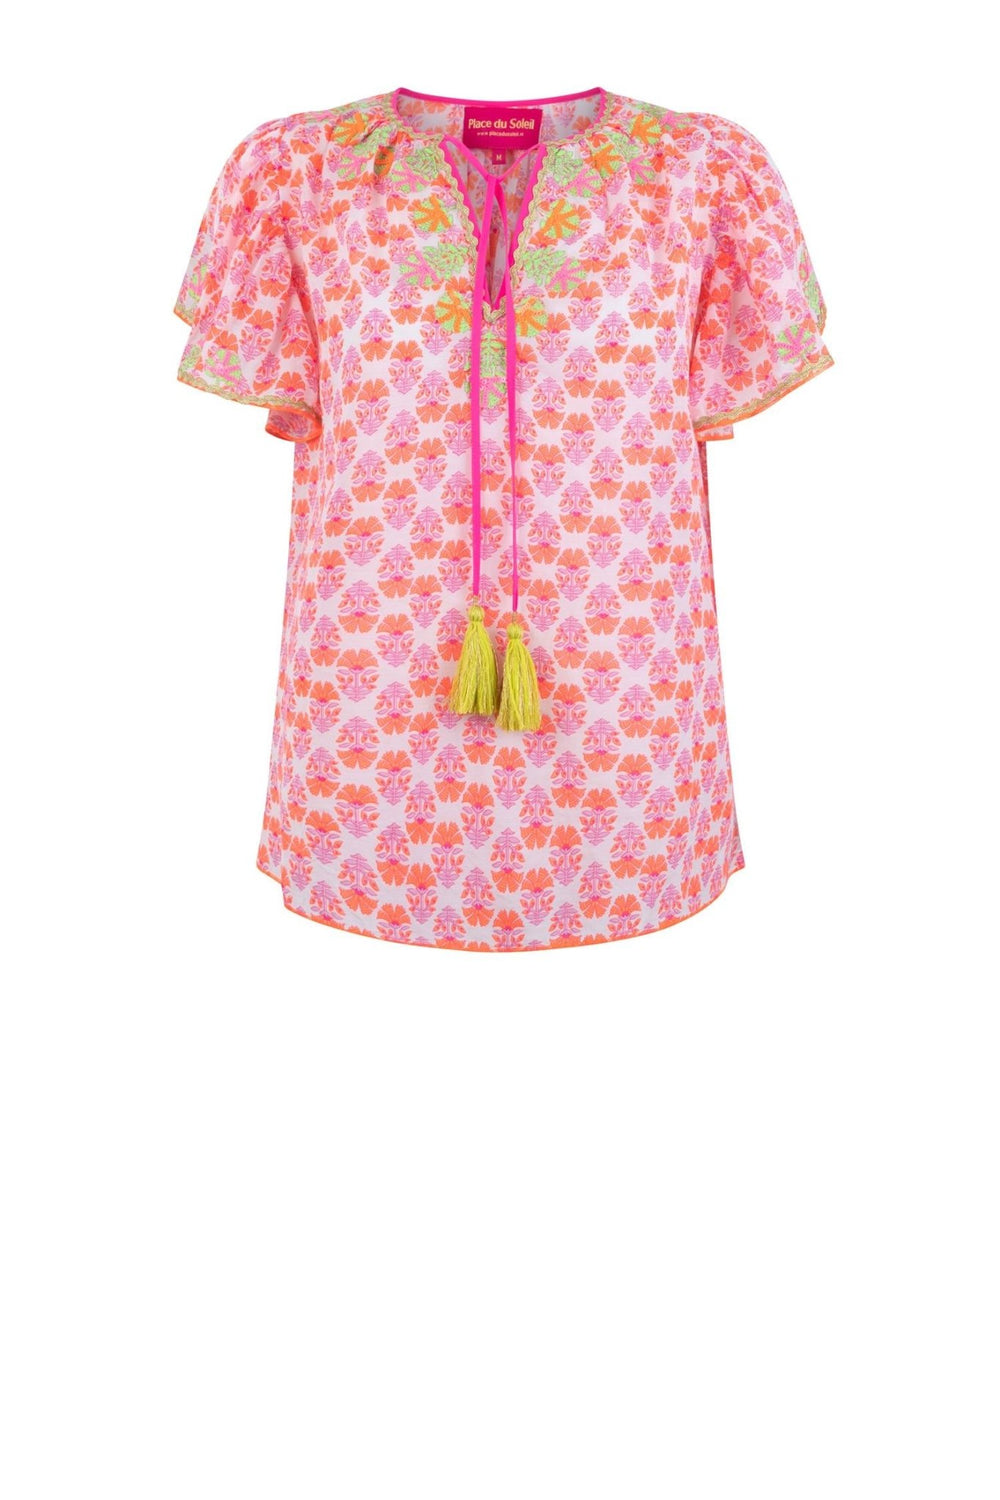 blouse rosa orange flowers | Skjorter og bluser | Smuk - Dameklær på nett